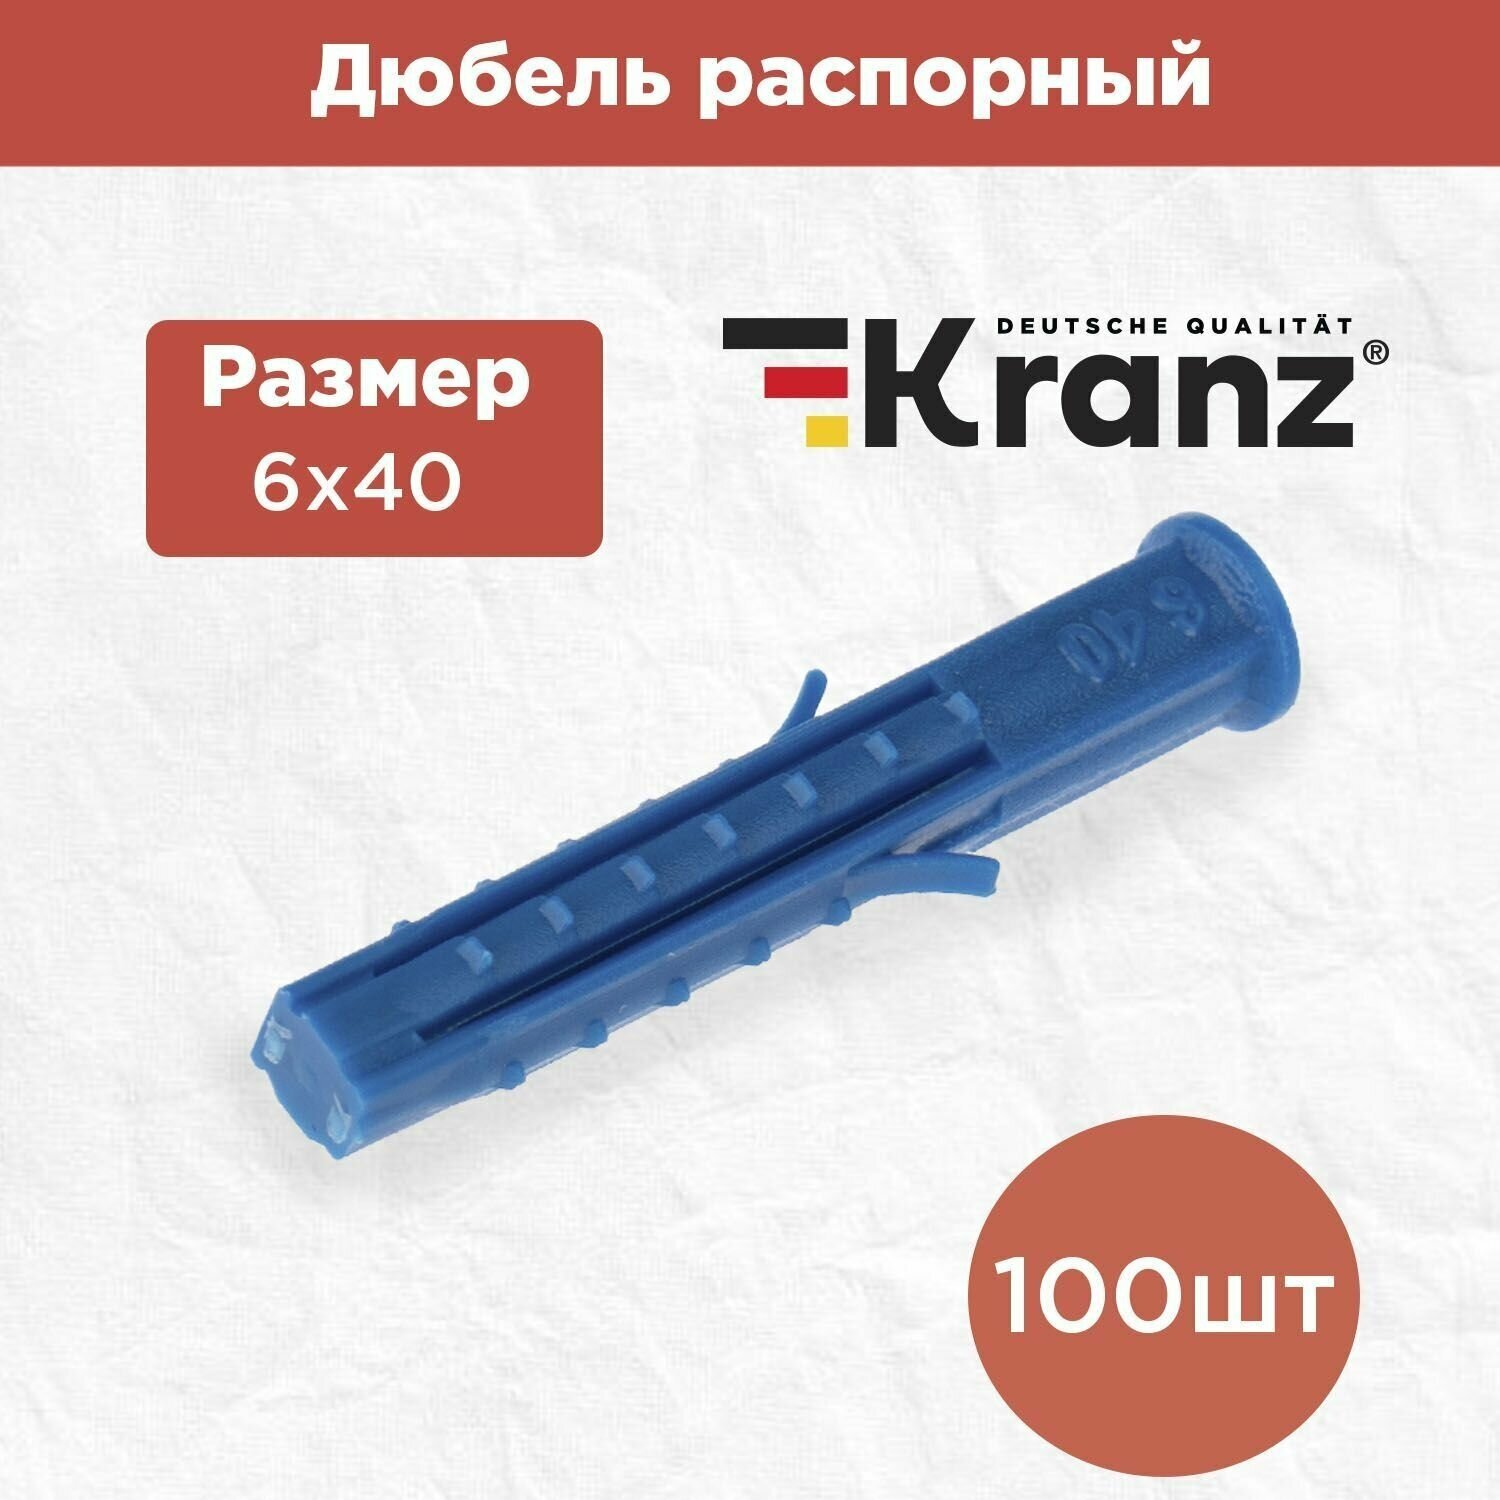 Дюбель распорный KRANZ высокопрочный 6х40 синий 100 штук в упаковке